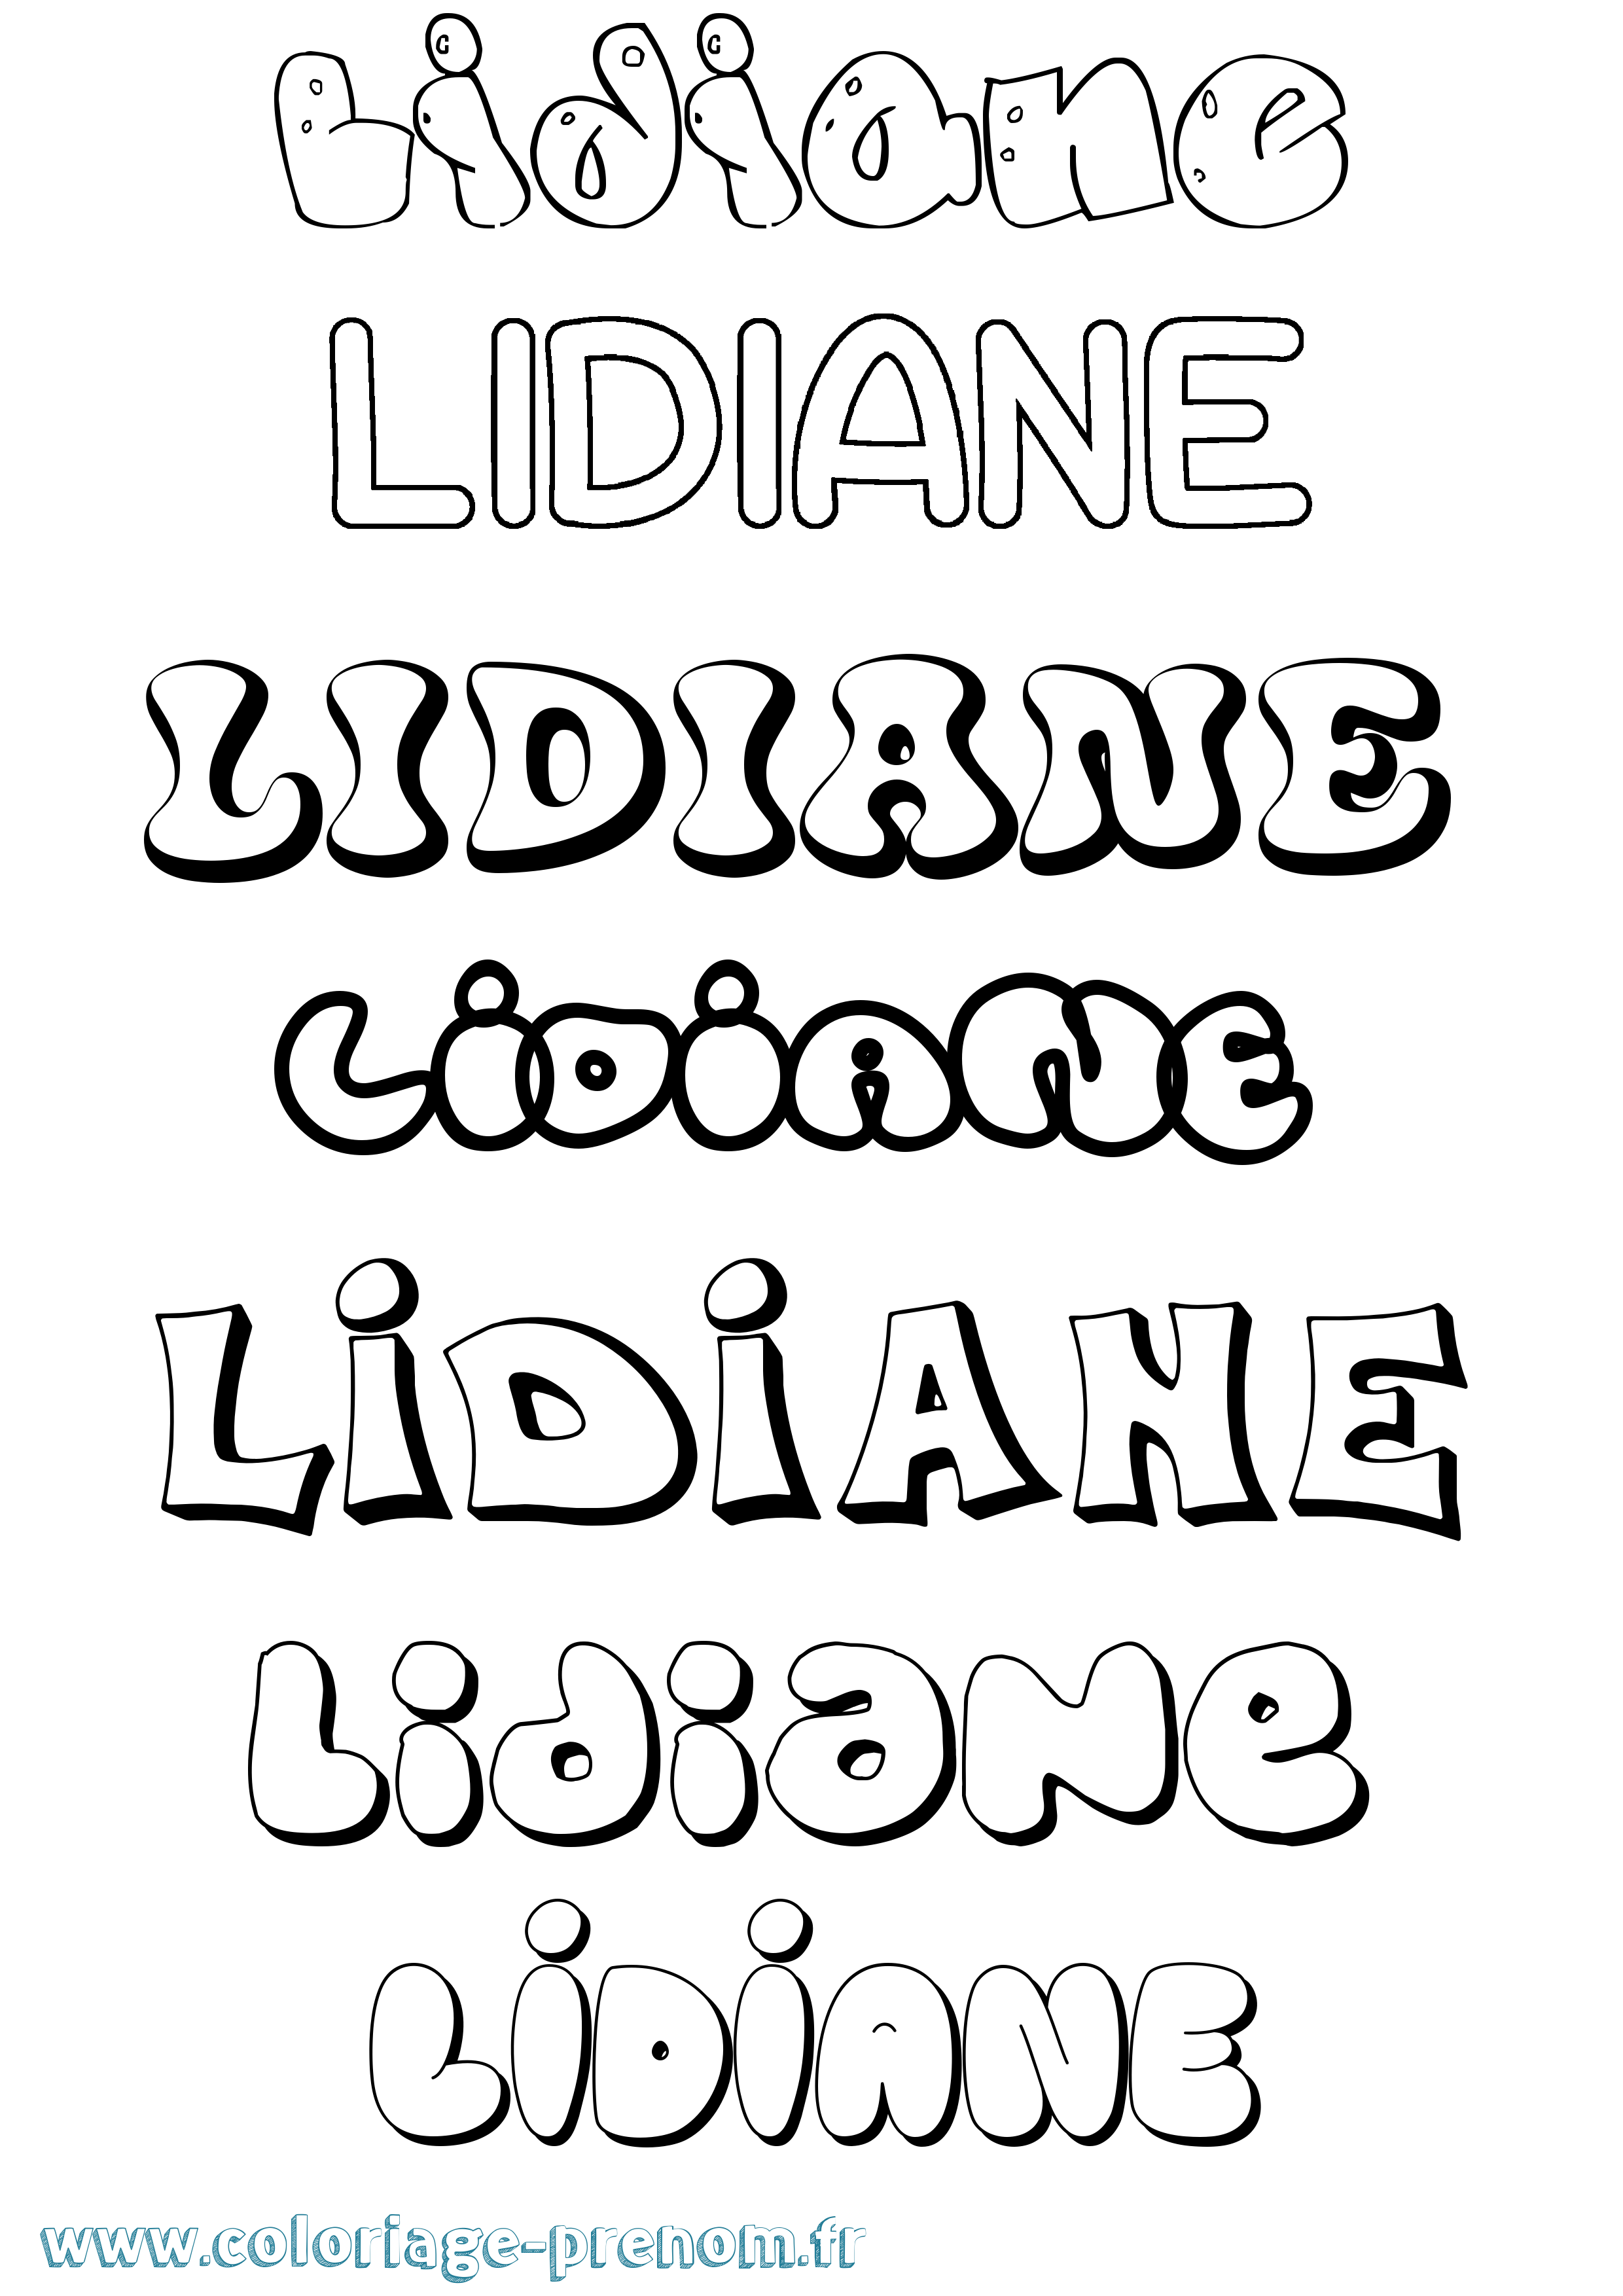 Coloriage prénom Lidiane Bubble